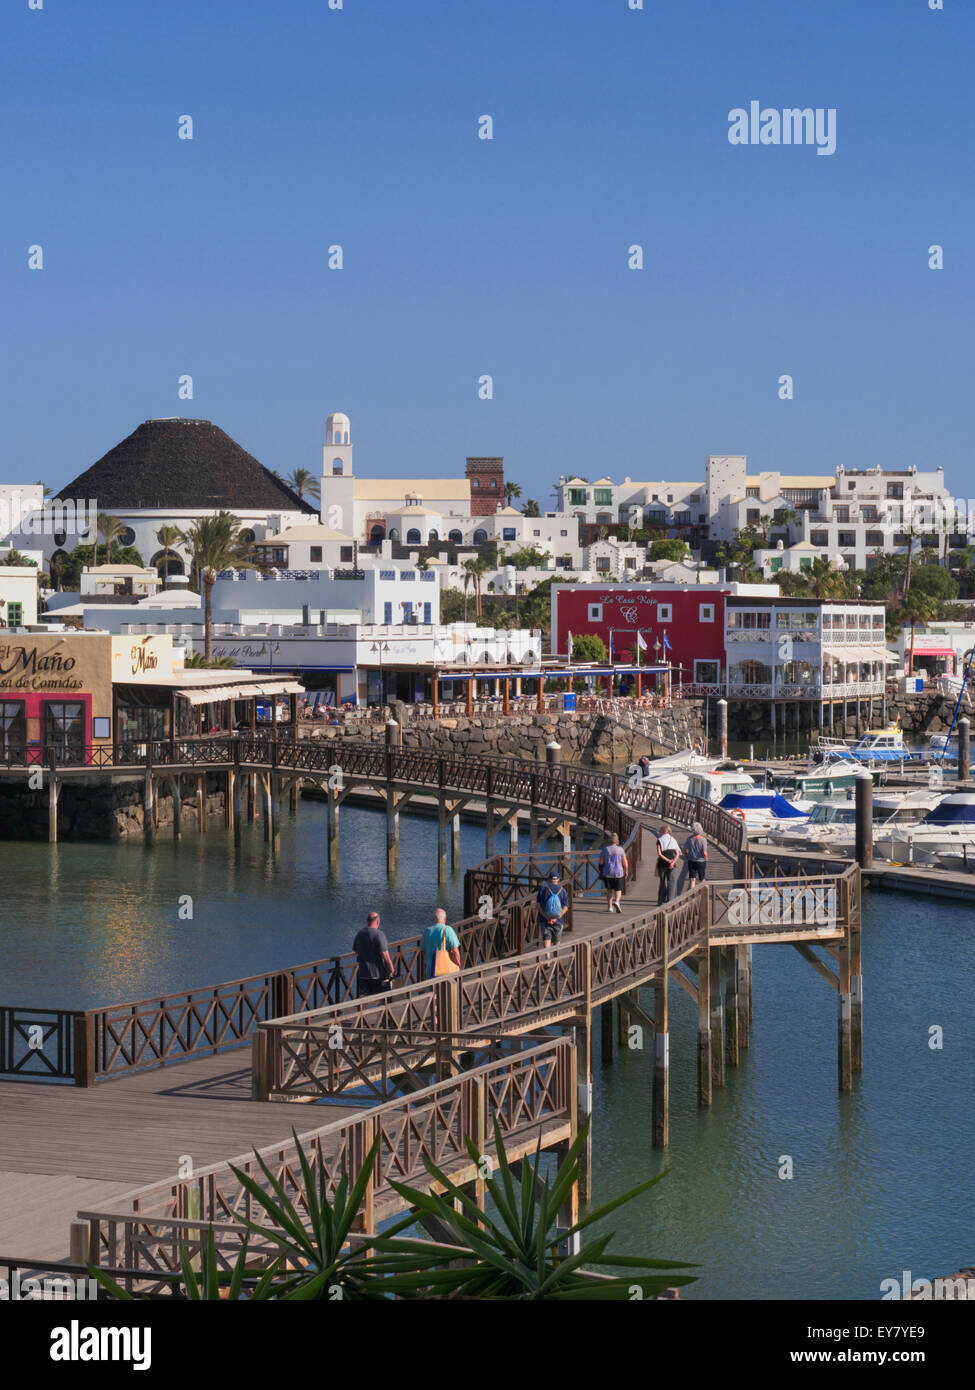 De luxe Marina Rubicon développement d'un port sur la côte sud-ouest de Lanzarote, Canaries Playa Blanca, Espagne Banque D'Images